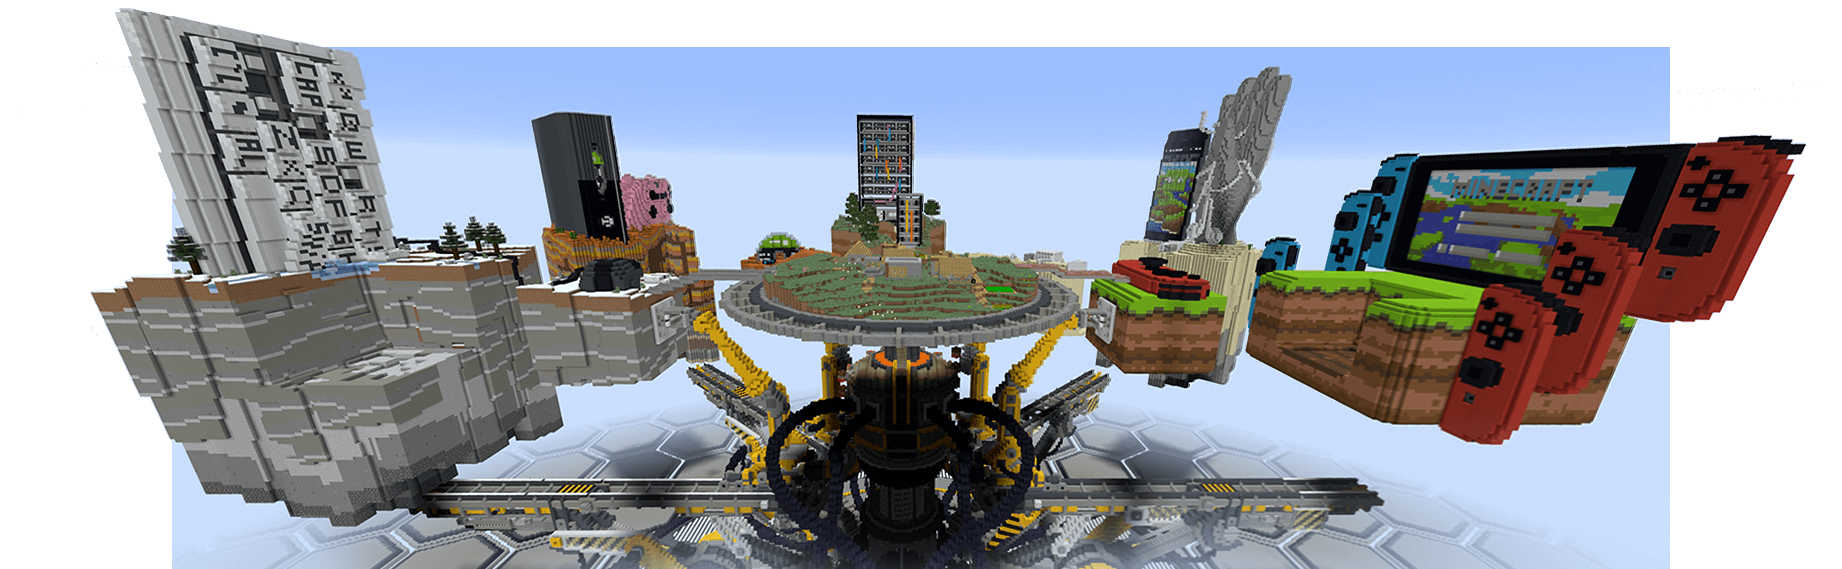 Máquina de la unidad de Minecraft que representa las plataformas en las que se puede jugar a Minecraft: PC, Xbox, dispositivos móviles y Nintendo Switch.